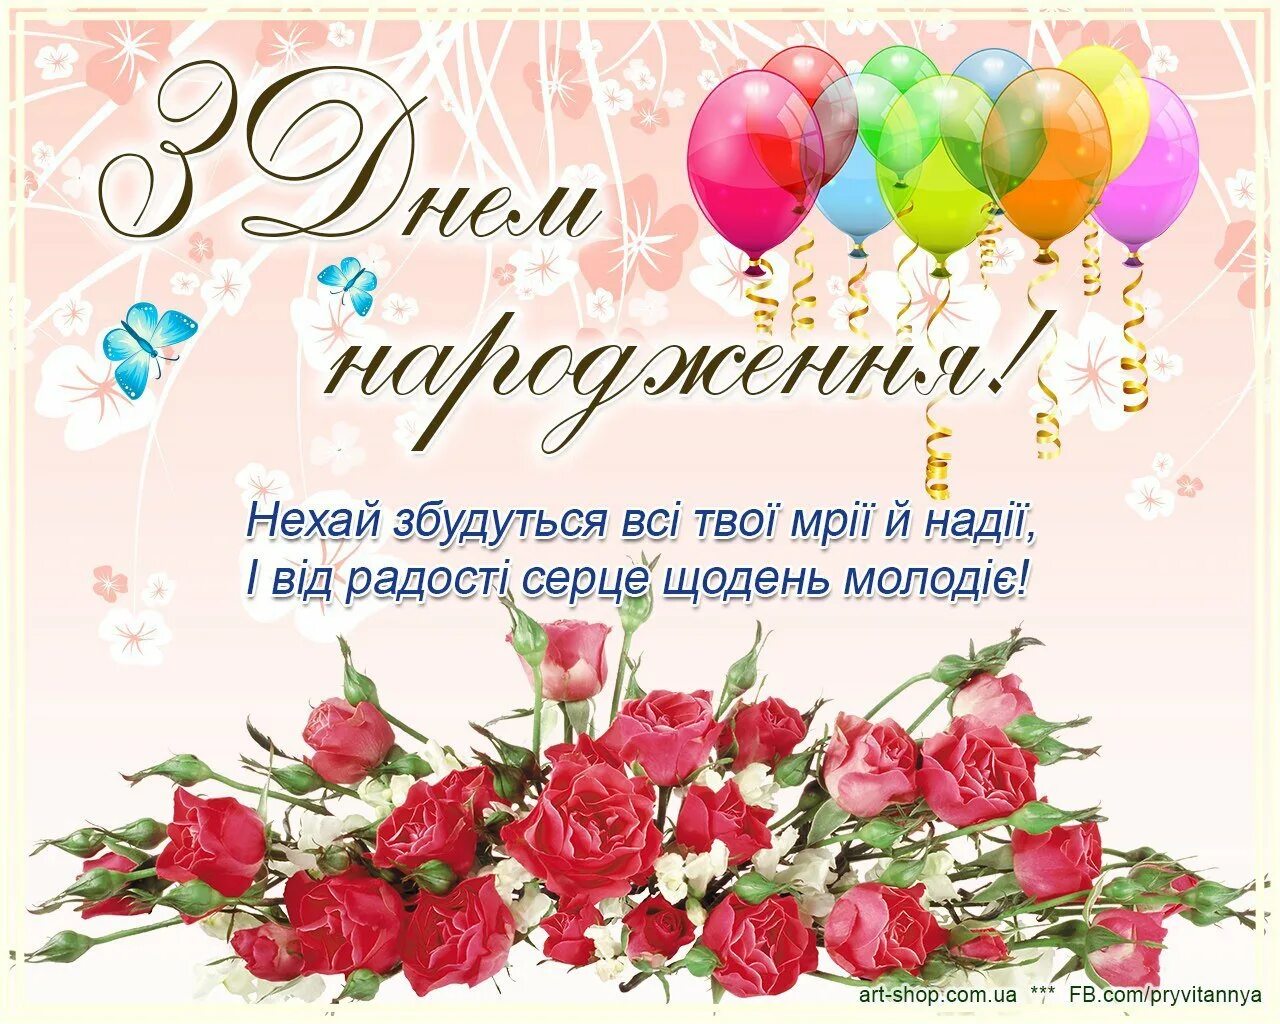 Открытки на украинском языке. З днем народження. Поздравление с днем рождения на украинском. Поздравления с днём рождения женщине на украинском языке. Поздравленя с днём рождения на украинском языке.